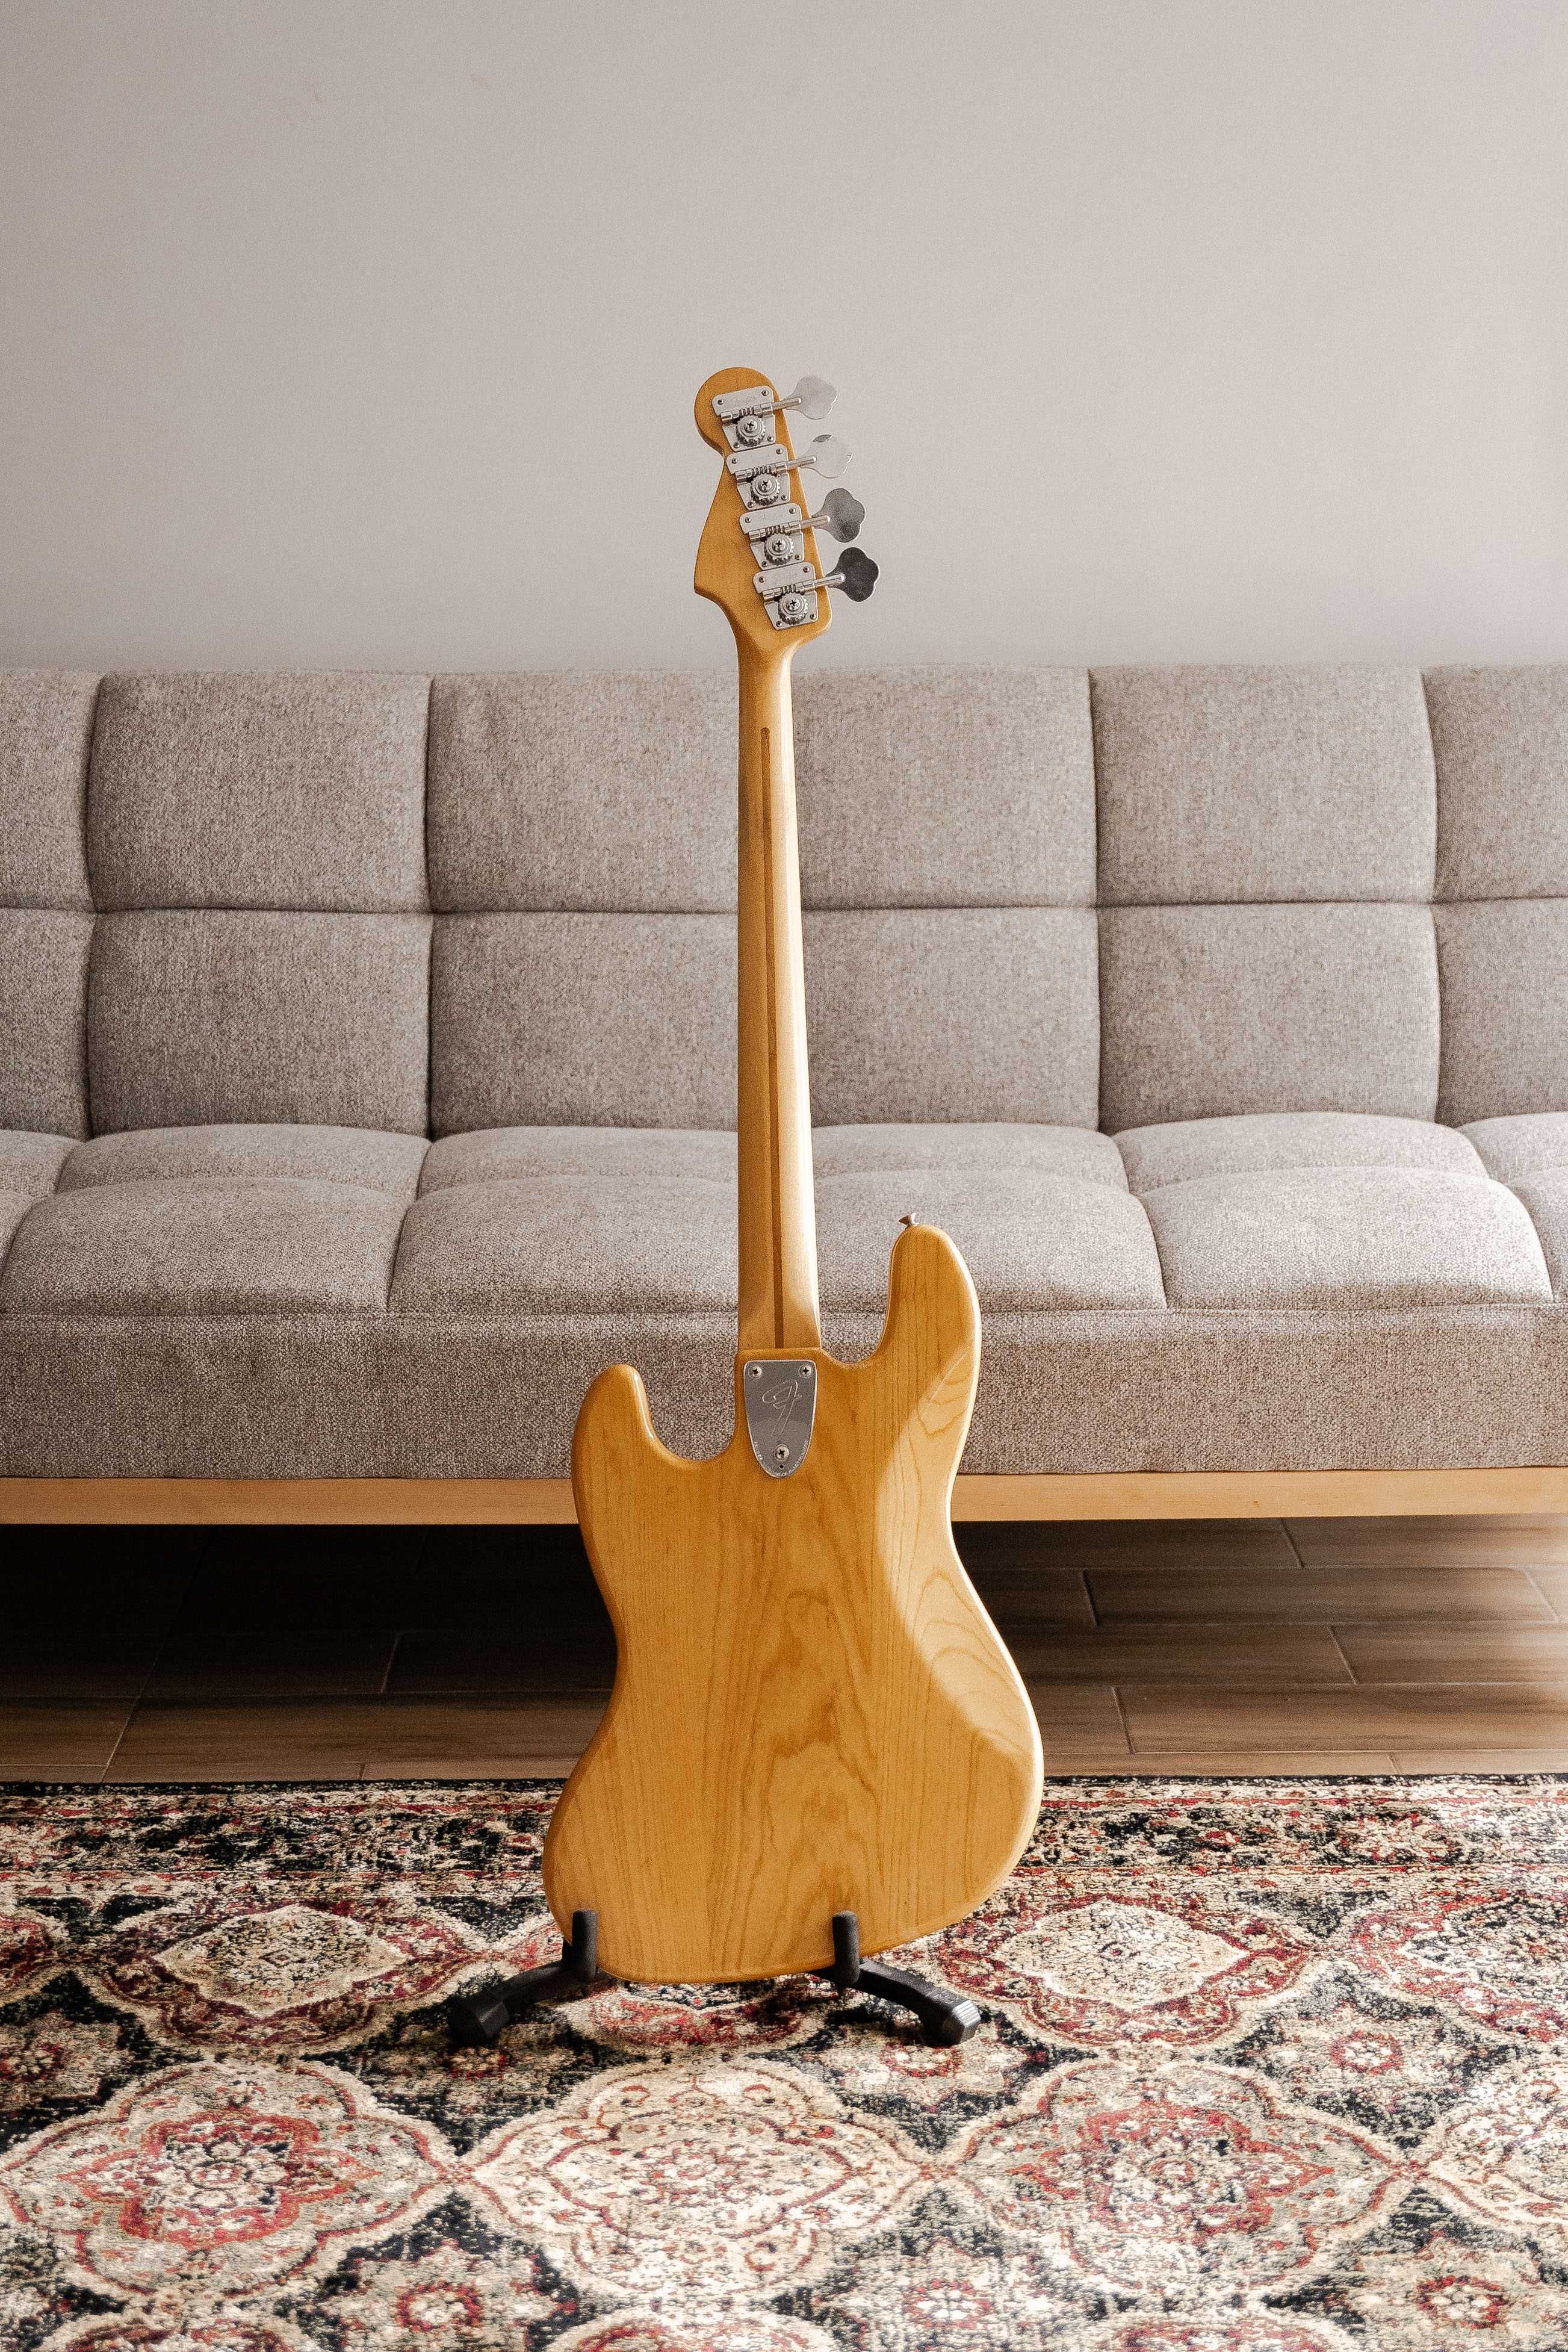 Fender Jazz Bass Natural 1978